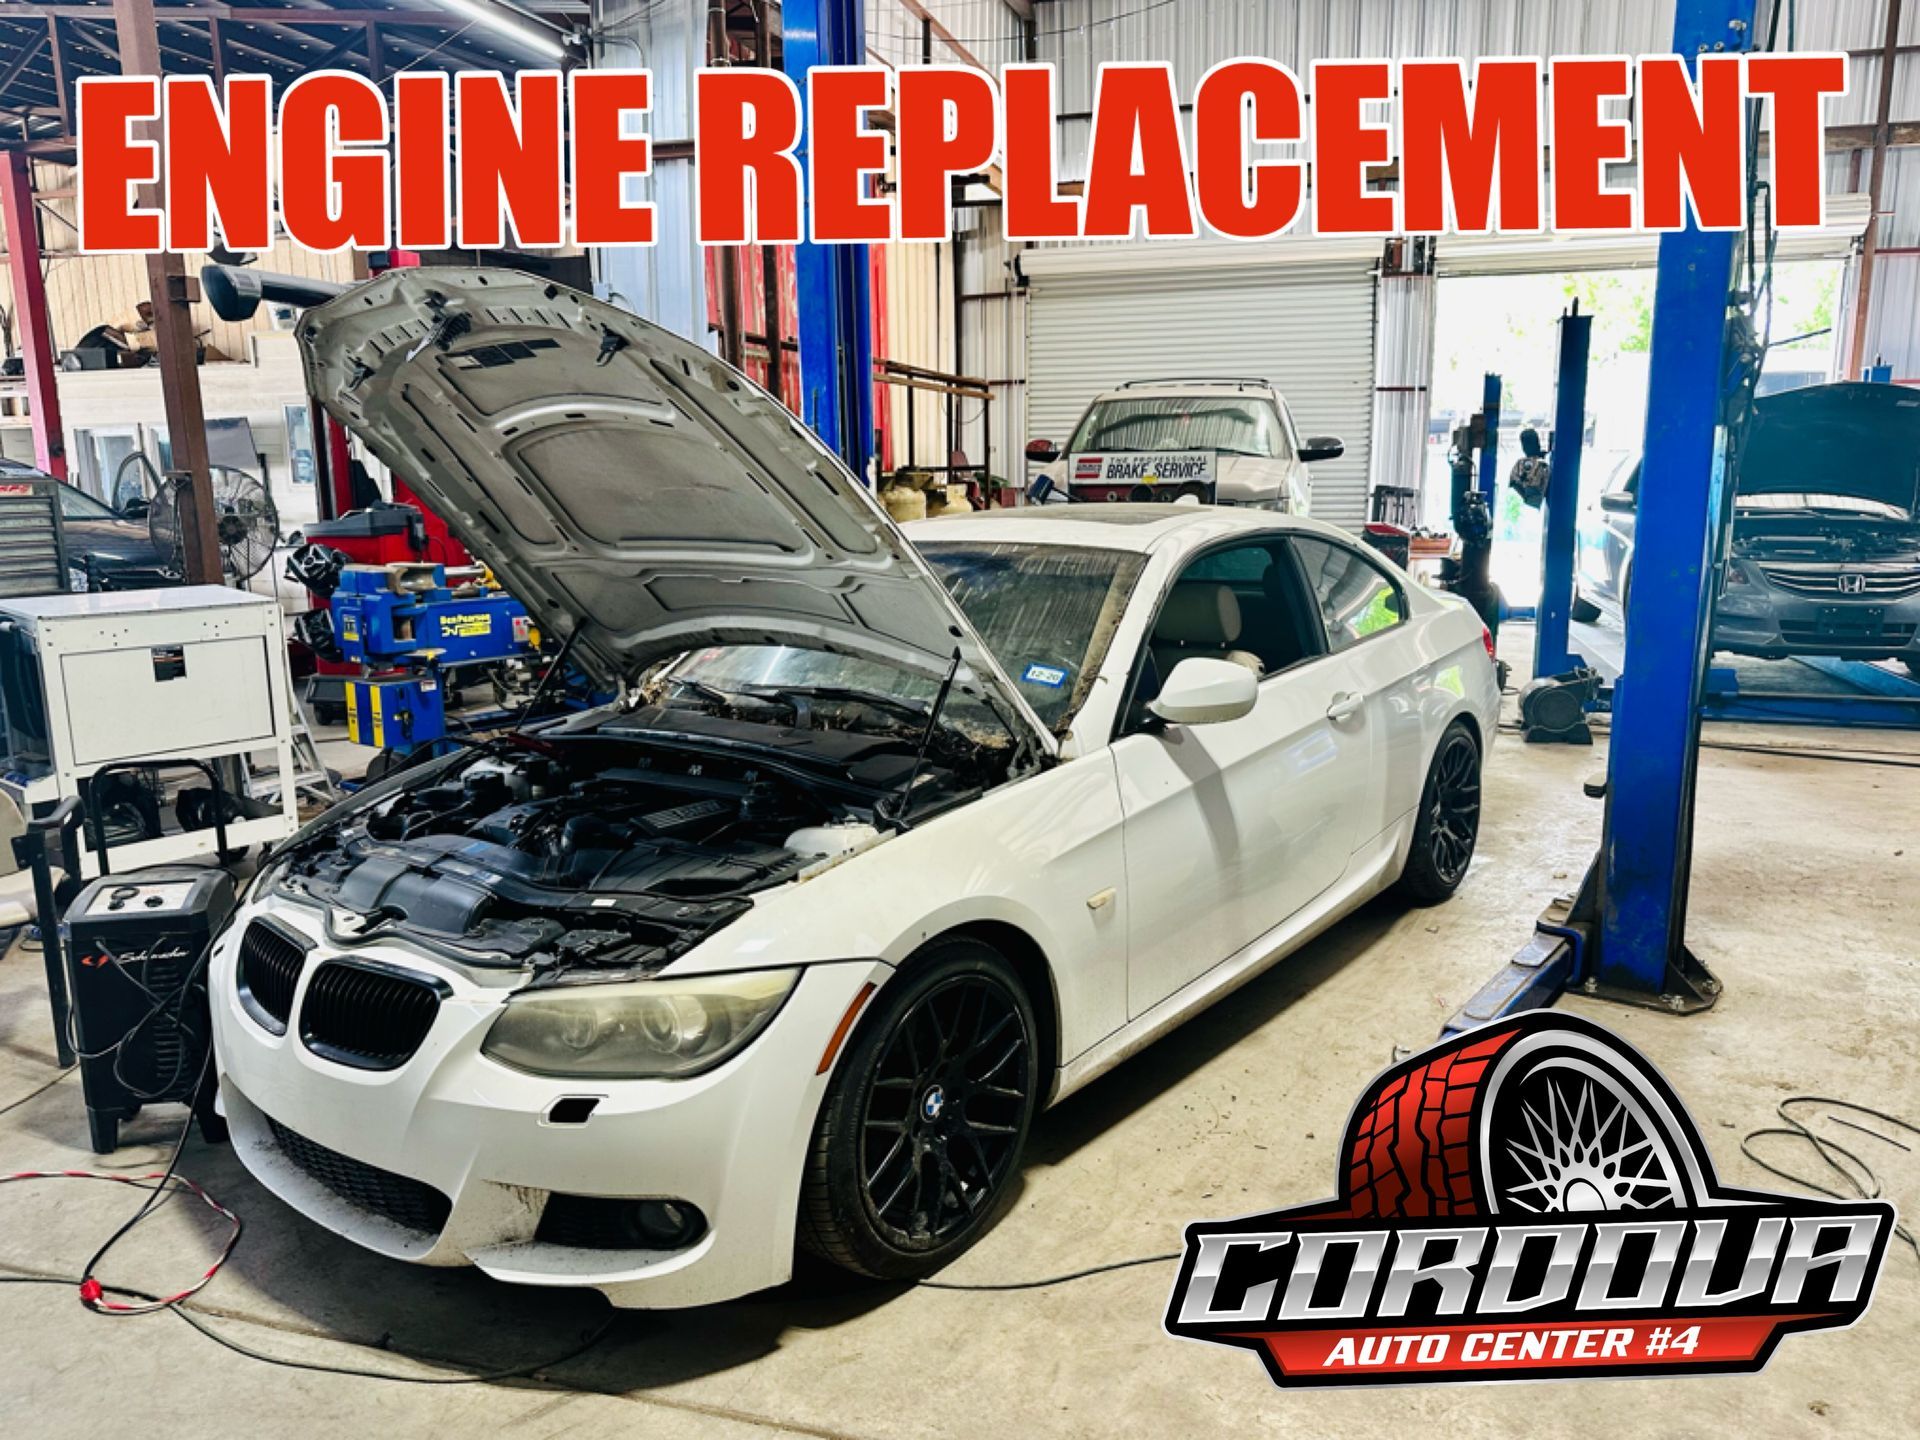 Engine Replacement| Cordova Auto Center #4